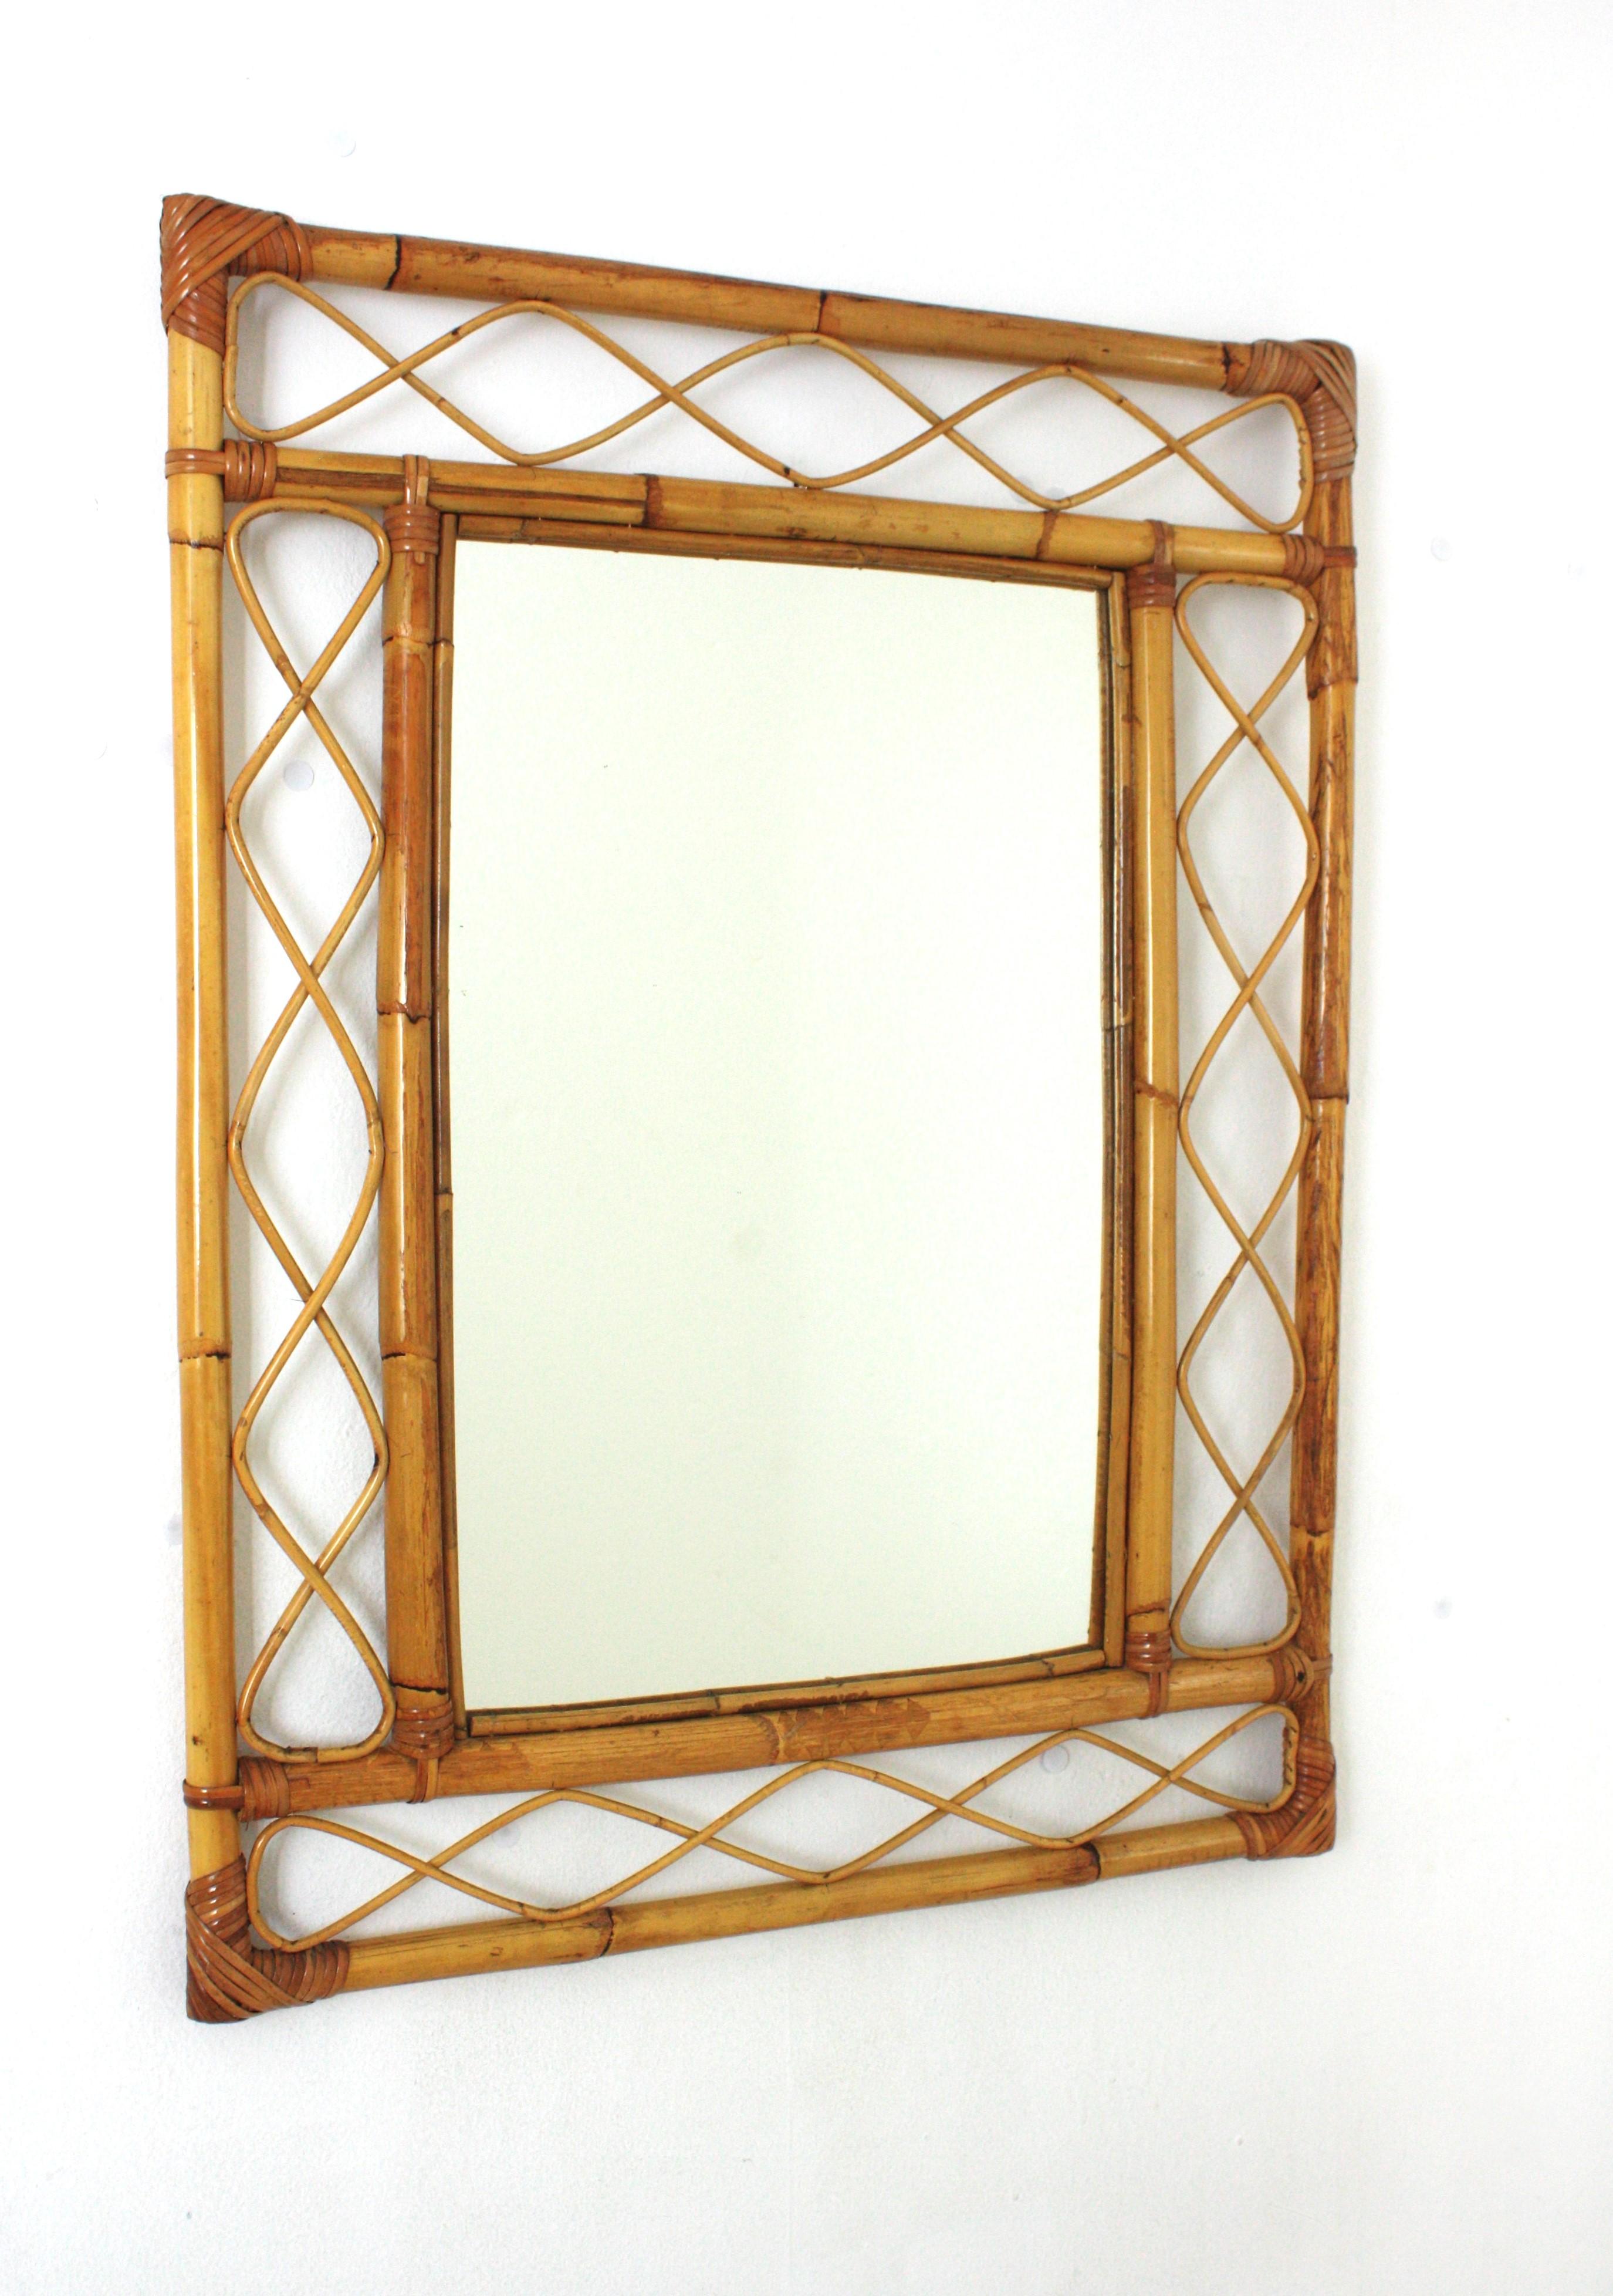 Miroir en bambou et en rotin fabriqué à la main, de style Franco Albini, qui attire le regard. Italie, années 1960.
Ce miroir présente un double cadre rectangulaire en bambou avec des ondulations décoratives en rotin entre les cannes de bambou.
Ce